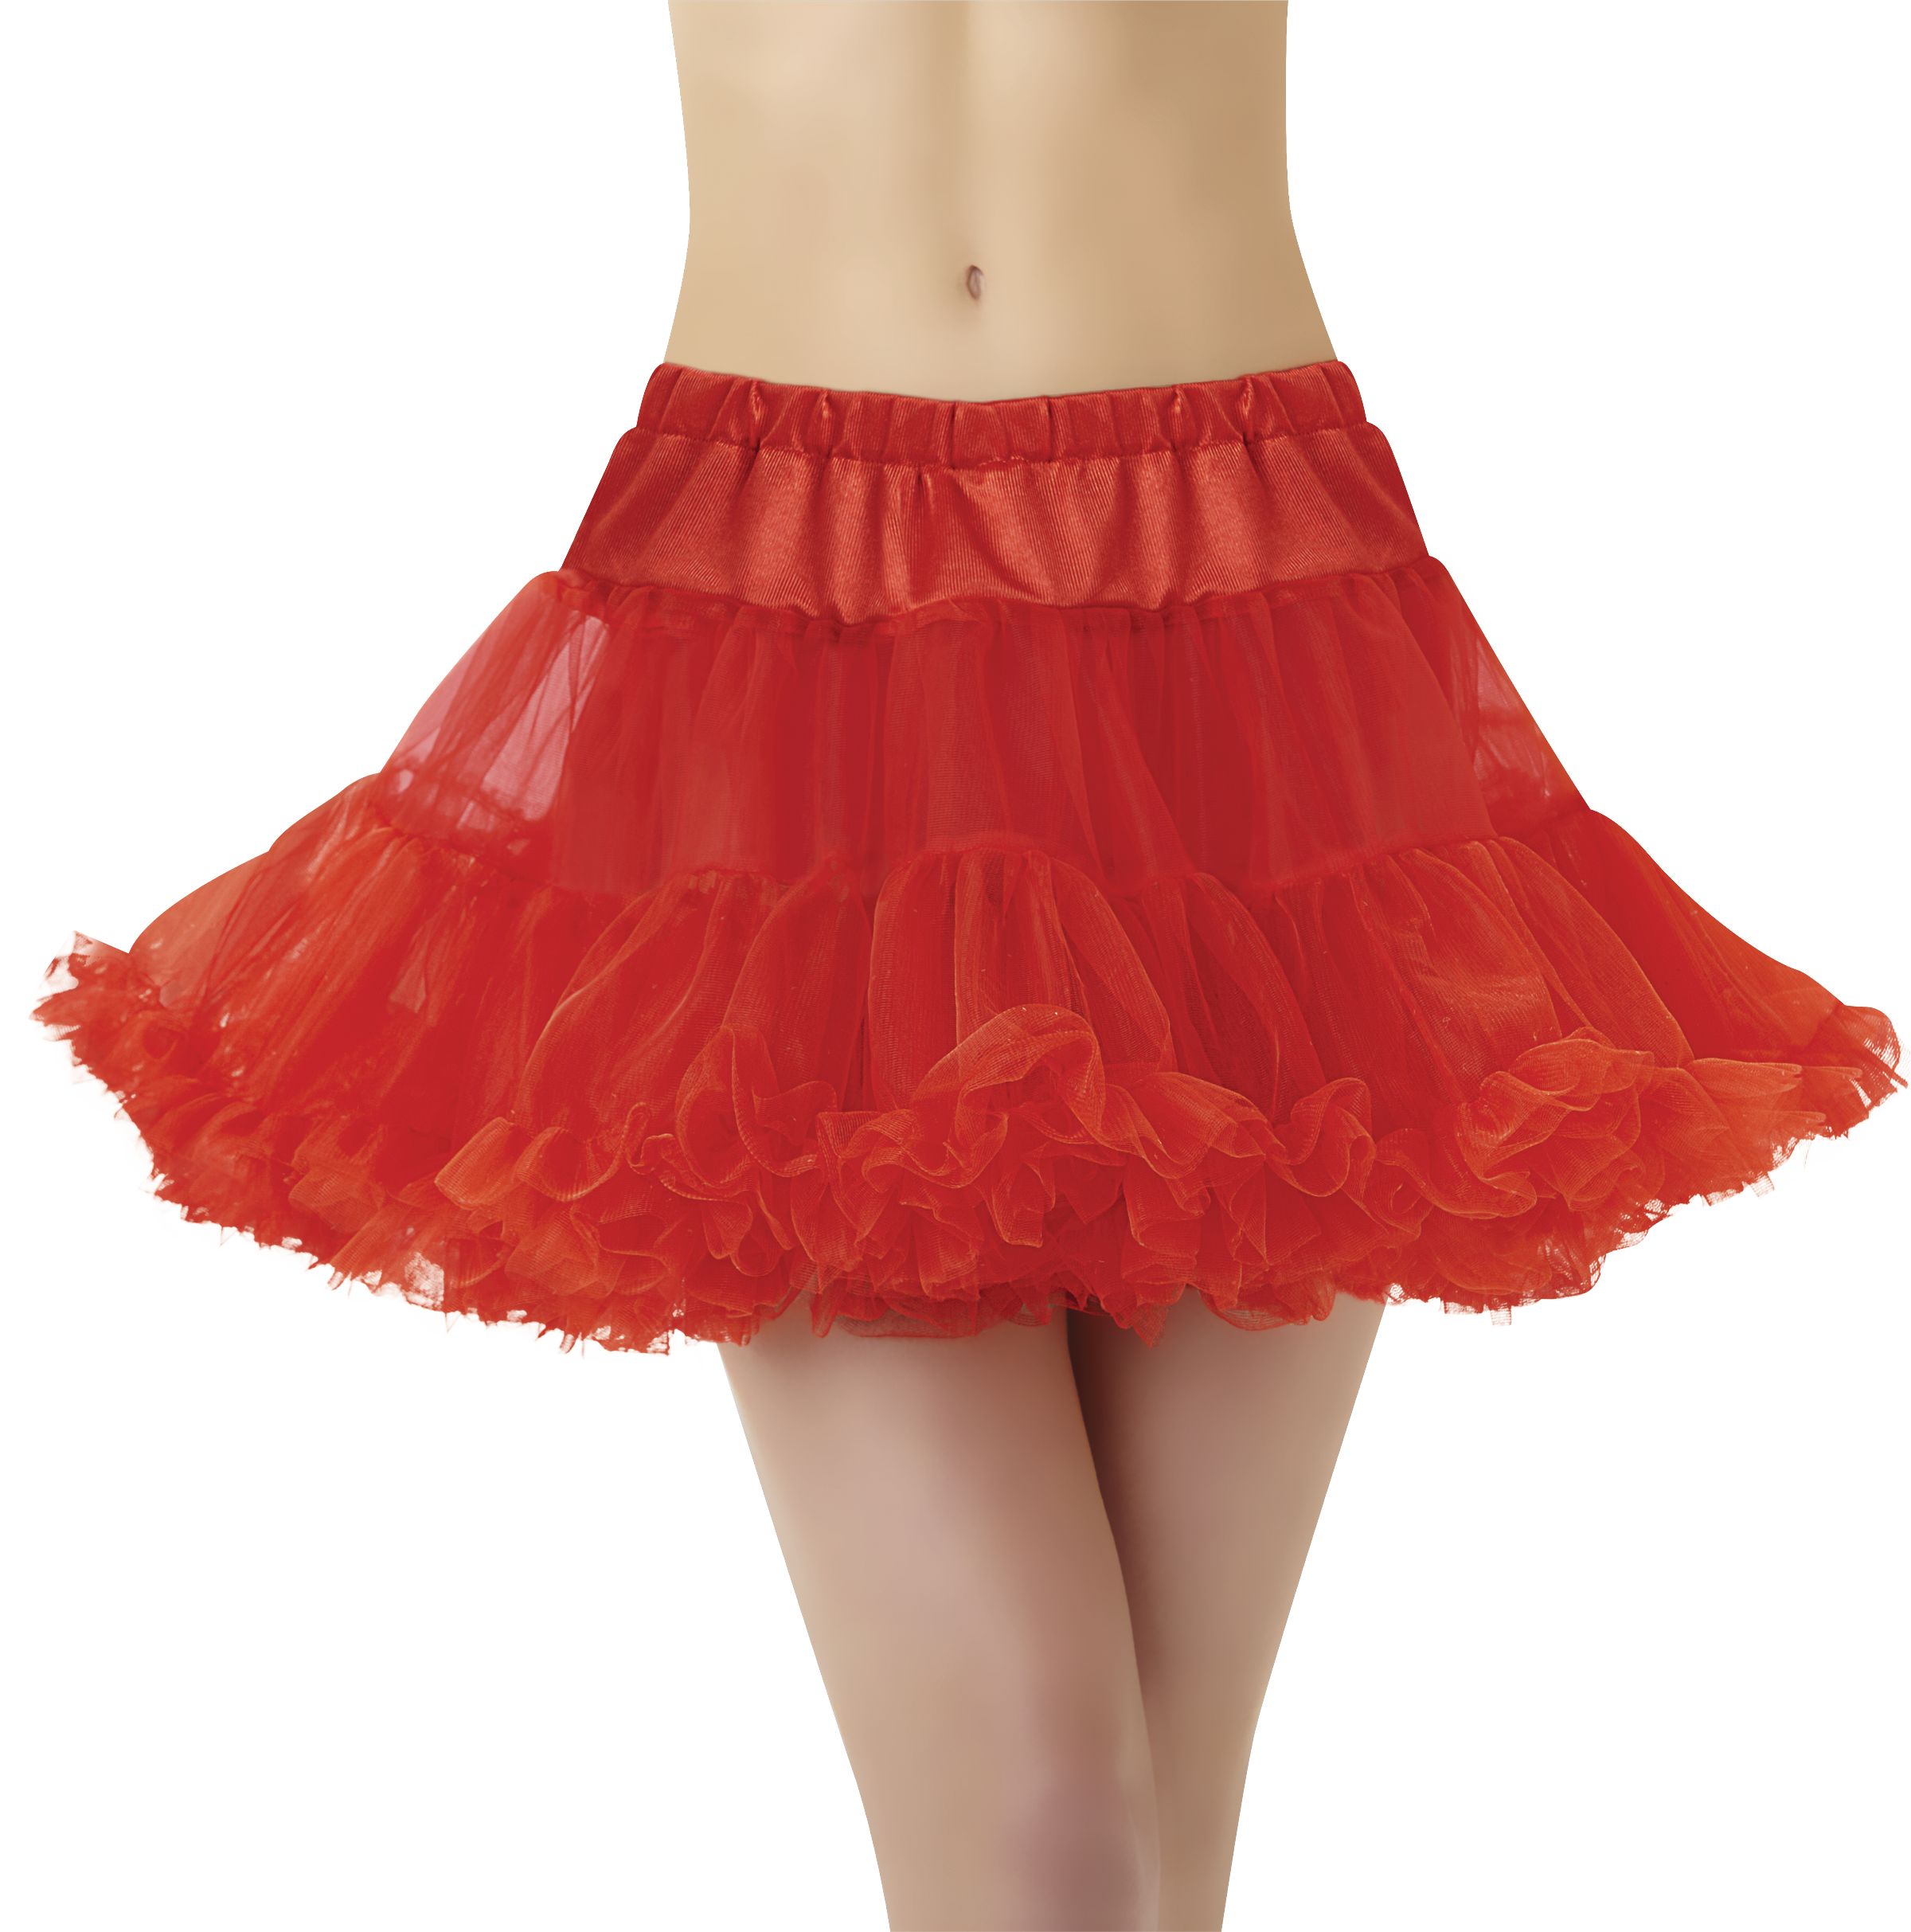 Tulle Skirt Women's Tutu Petticoat Underskirt Mini Skirt Dance